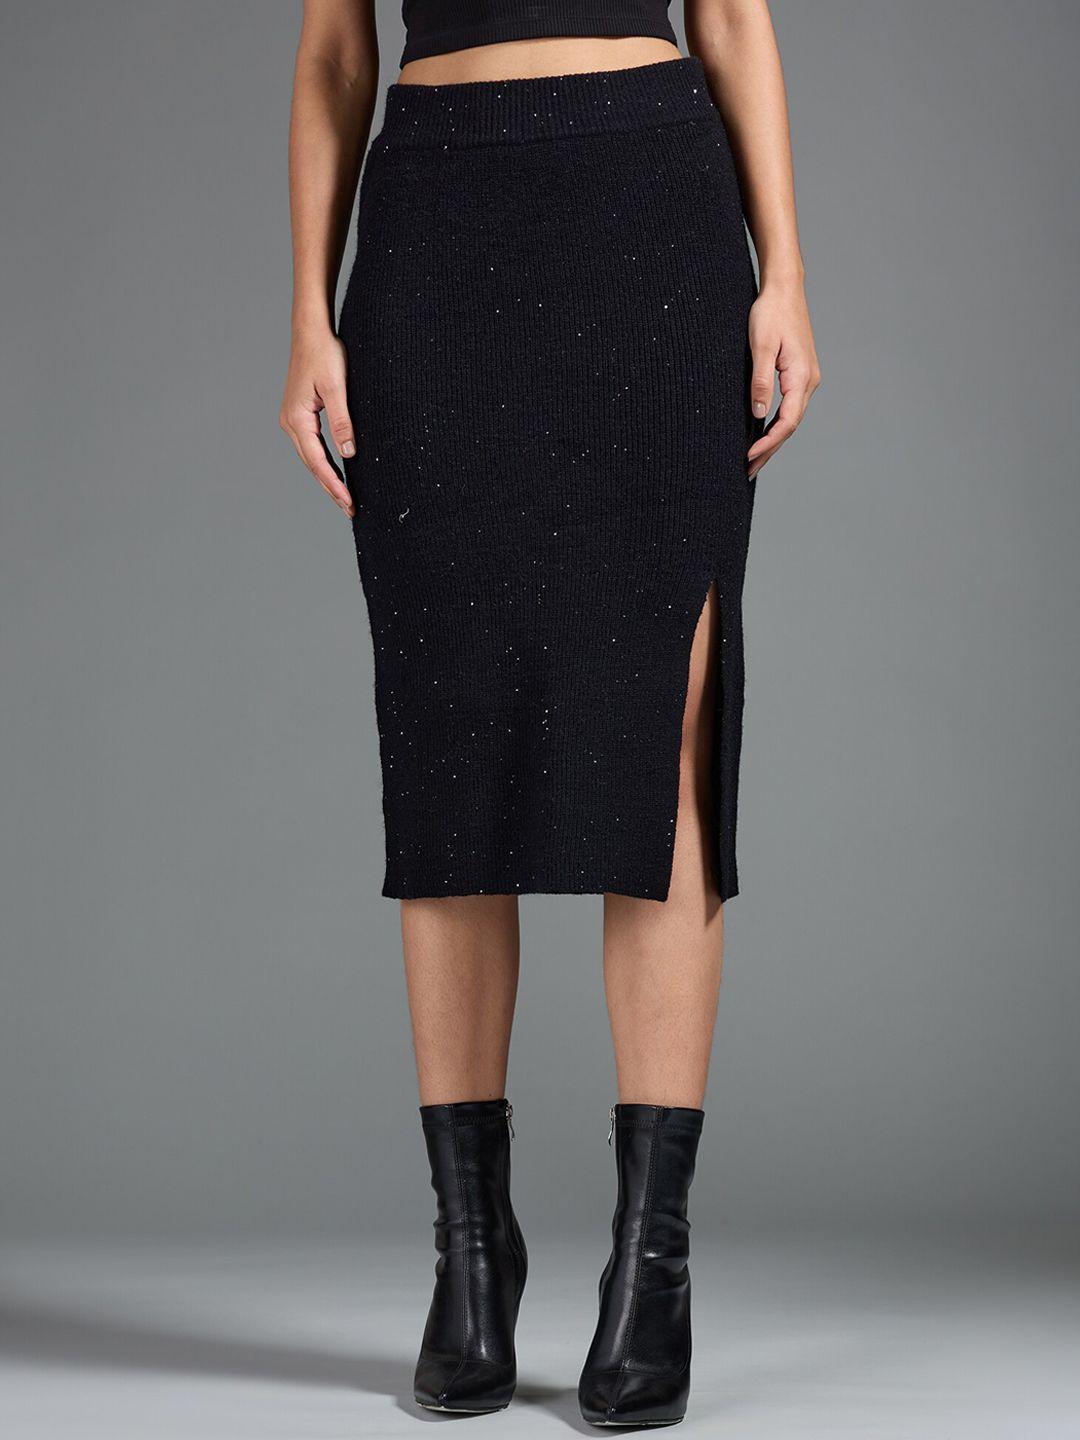 20dresses black embellished acrylic sheath midi skirt